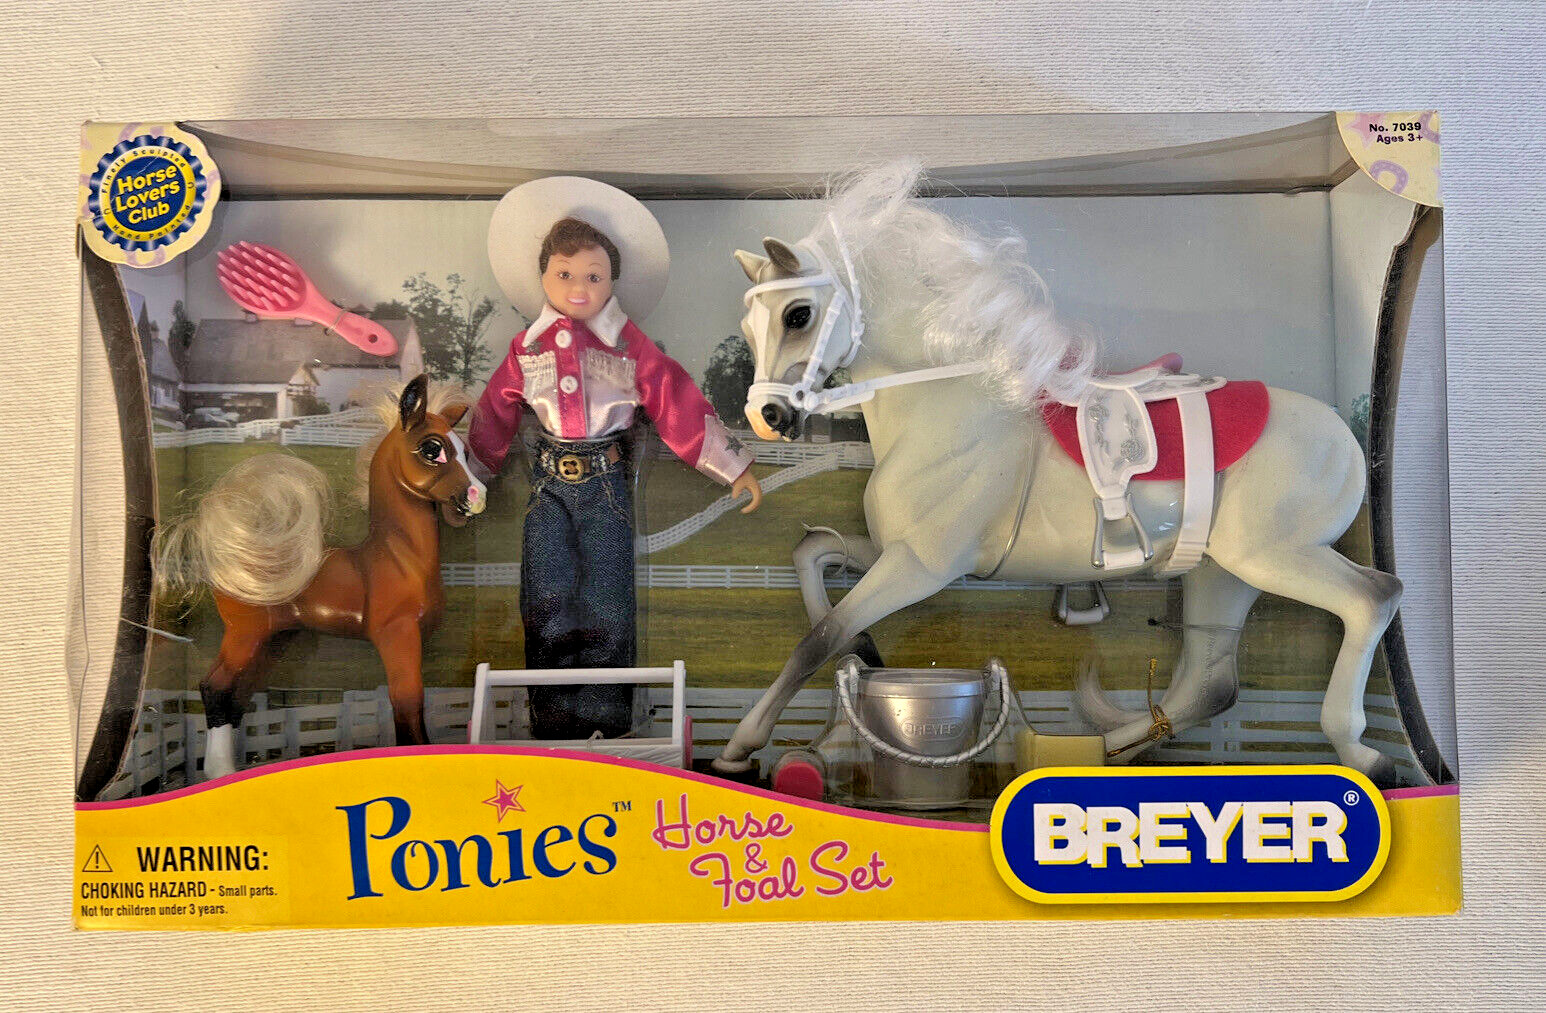 Breyer Ponies Horse & Foal Set - Horse Lovers Club #7039 In original box (2007)